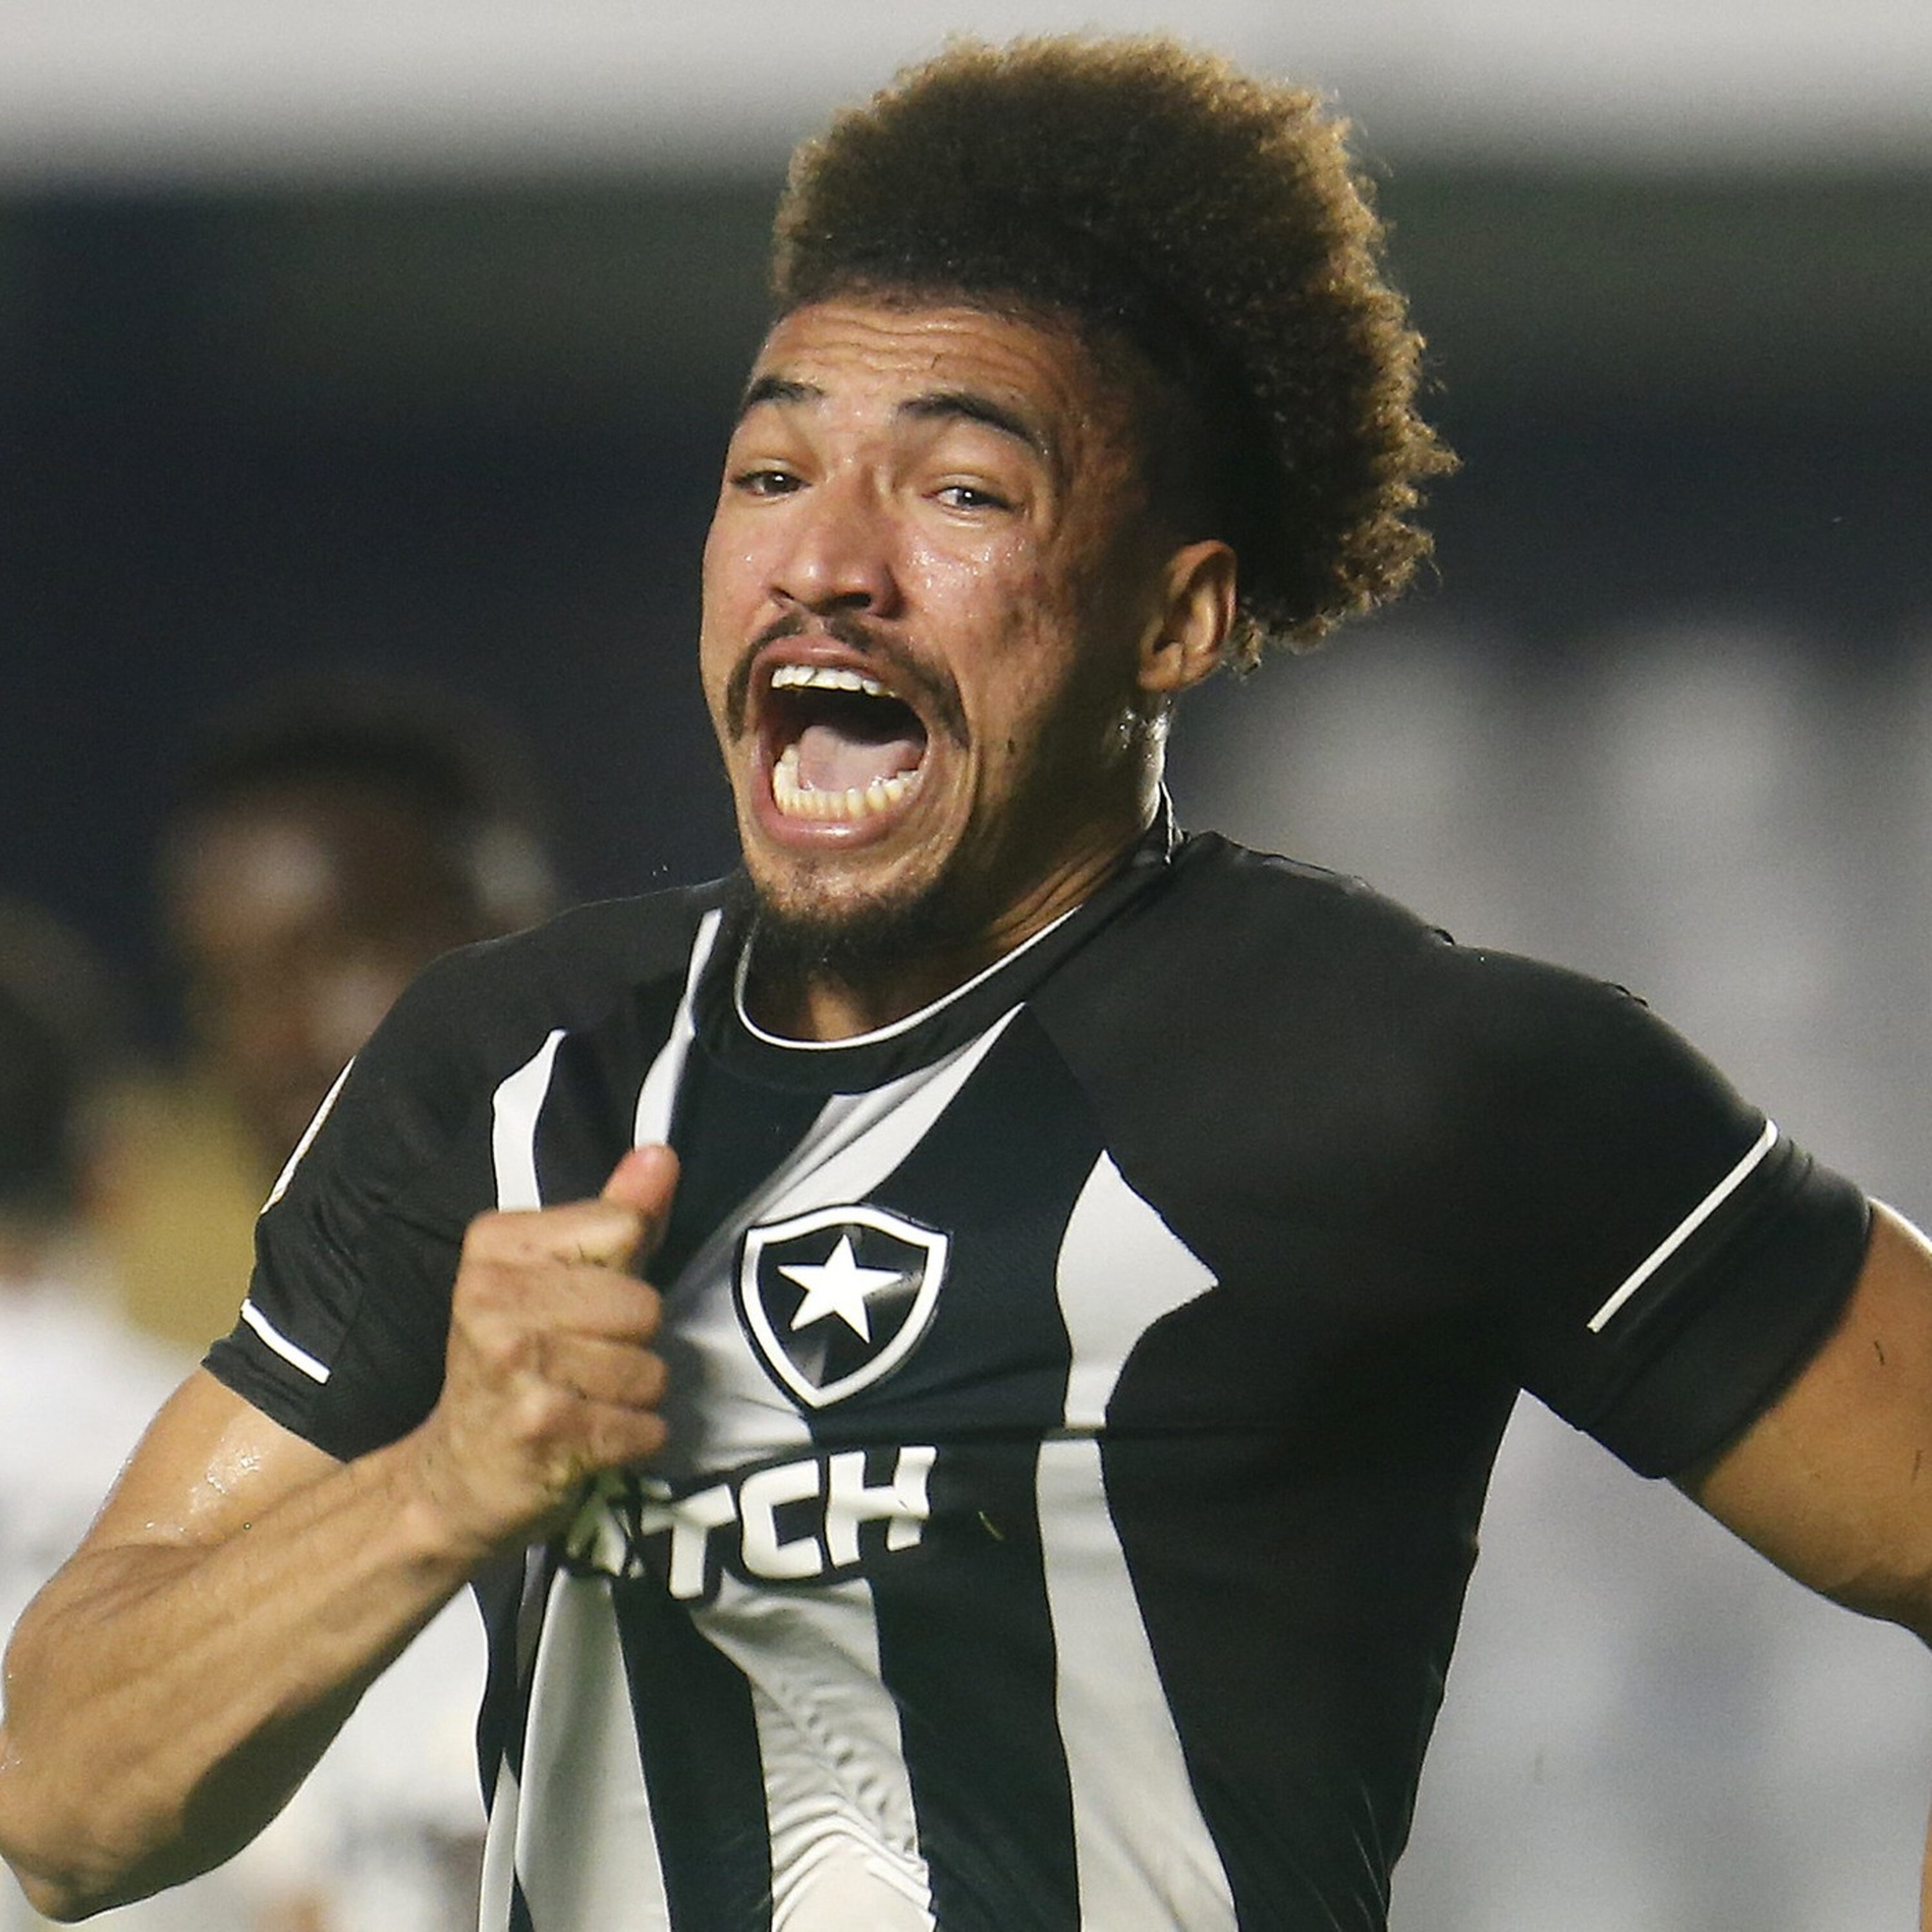 GE Botafogo #273 - Time mostra poder de reação: "Querem ser campeões"